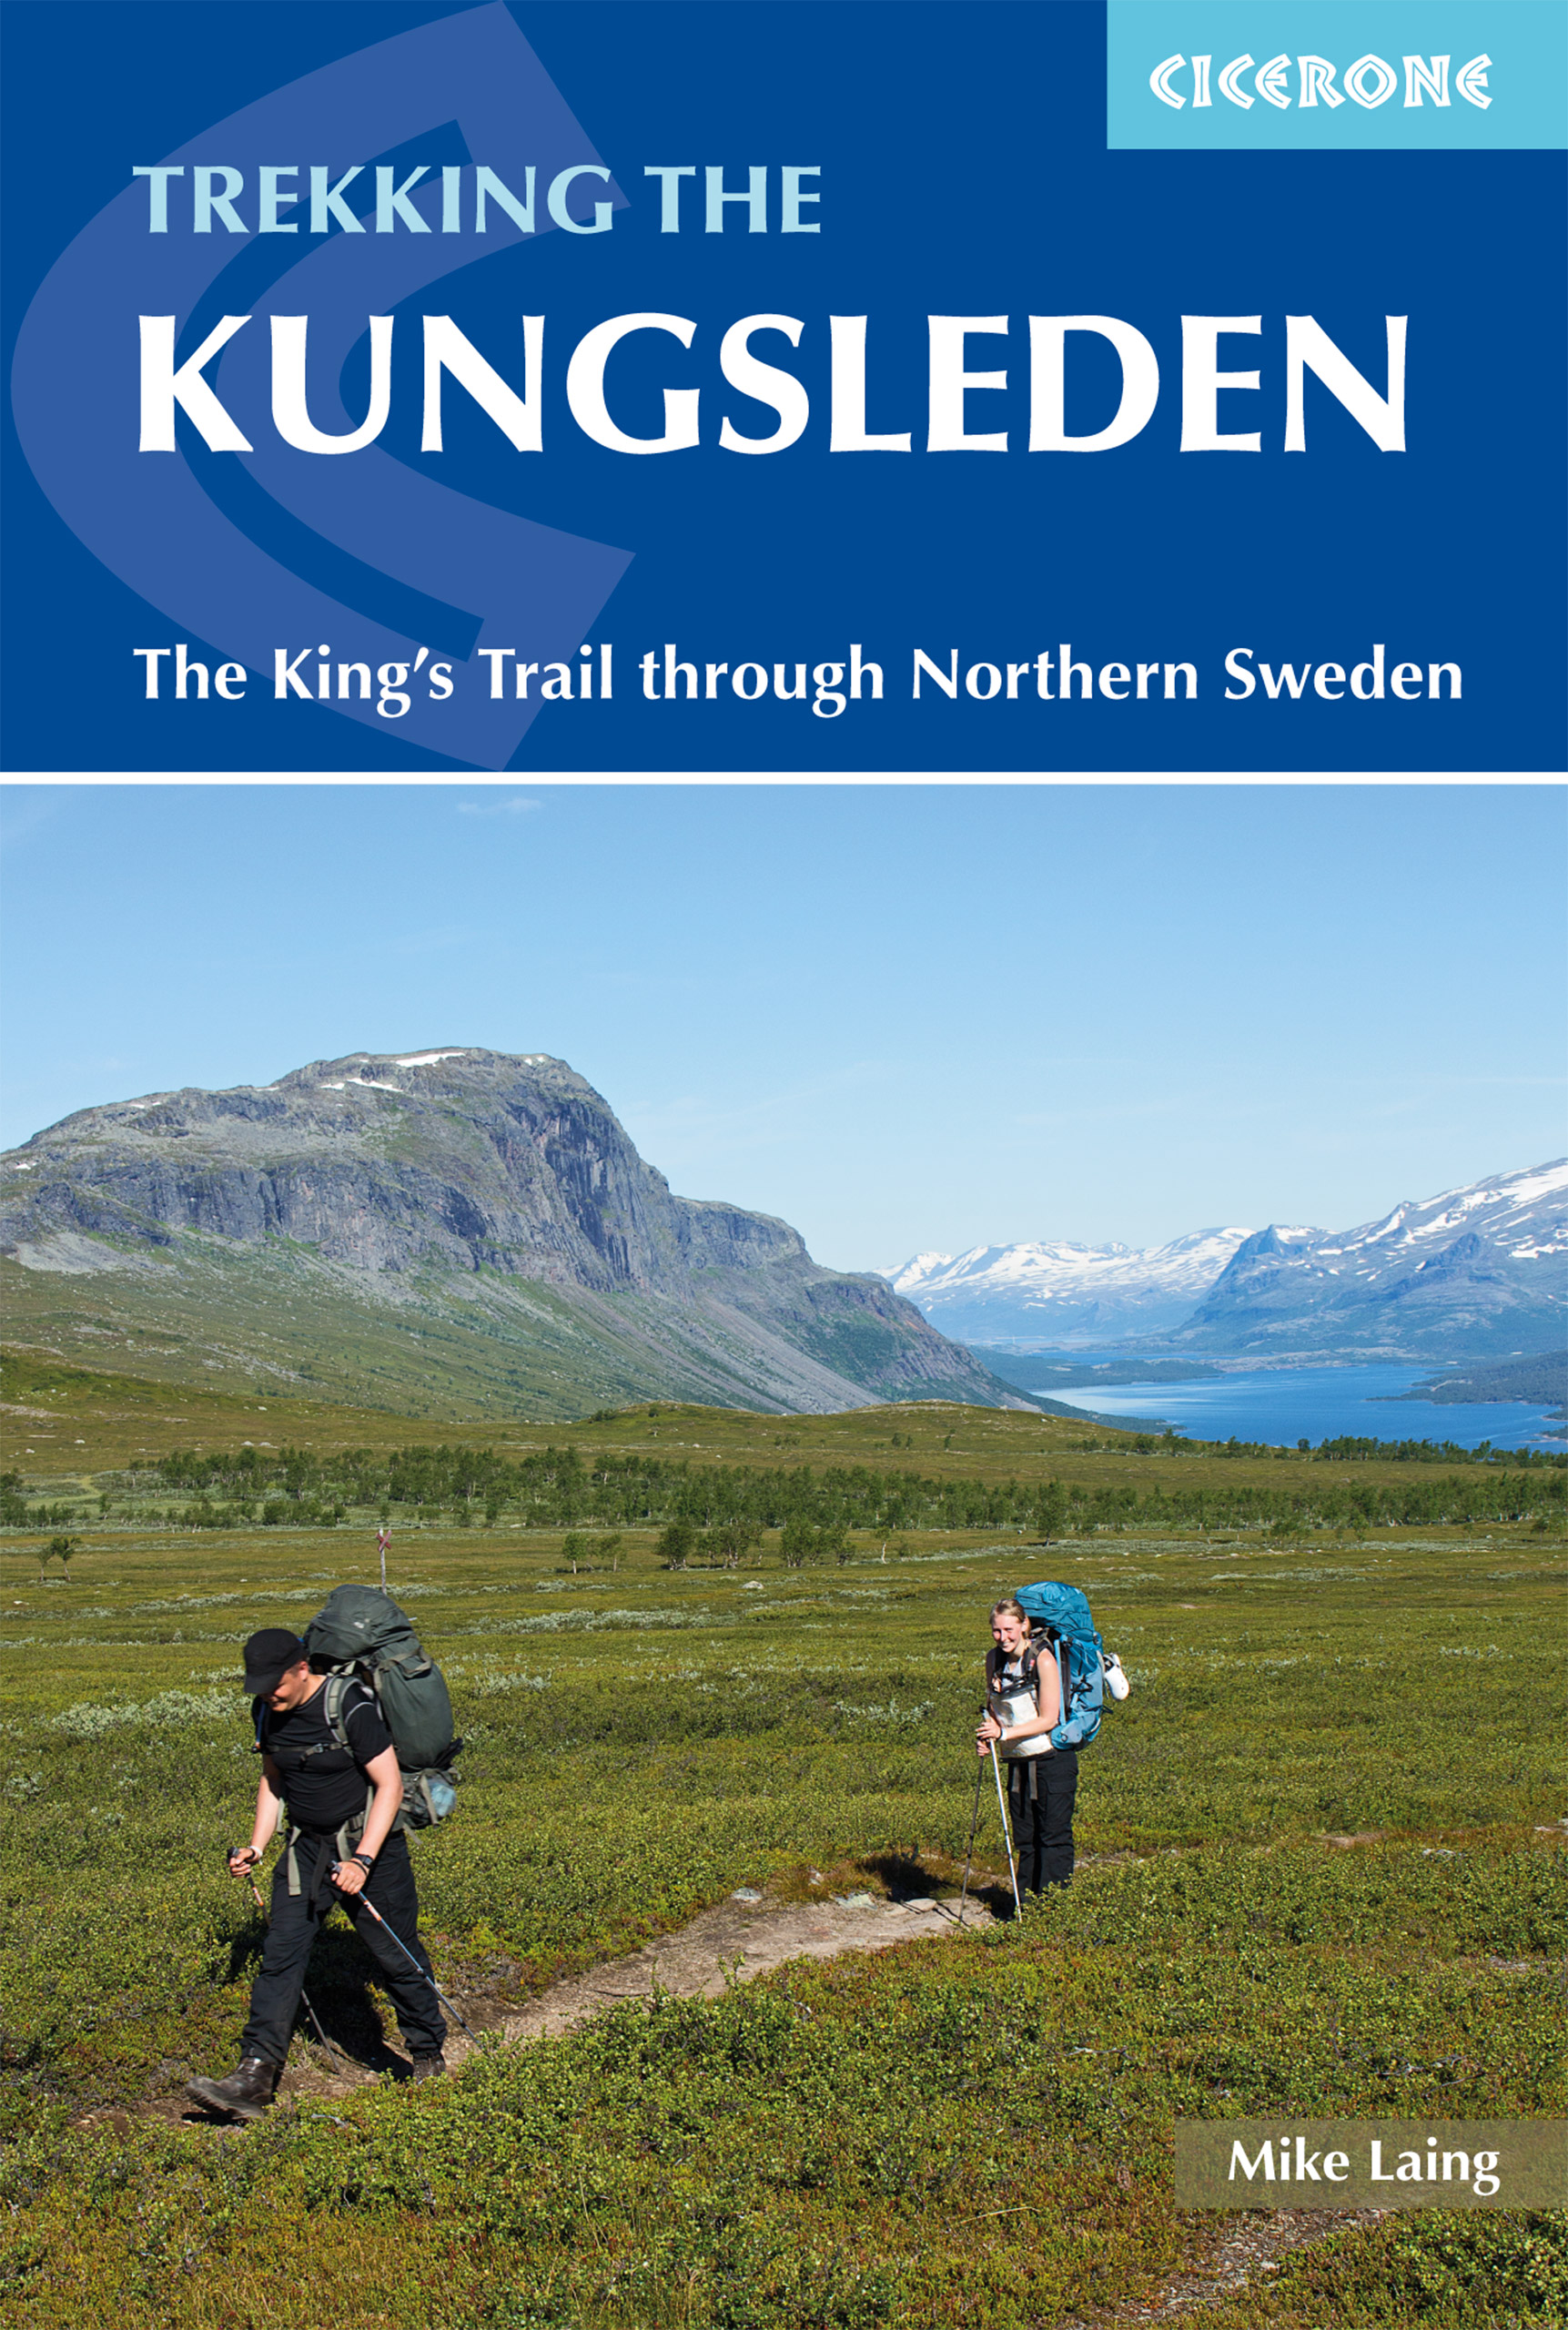 Kungsleden trekking / King's Trail through Northern Sweden